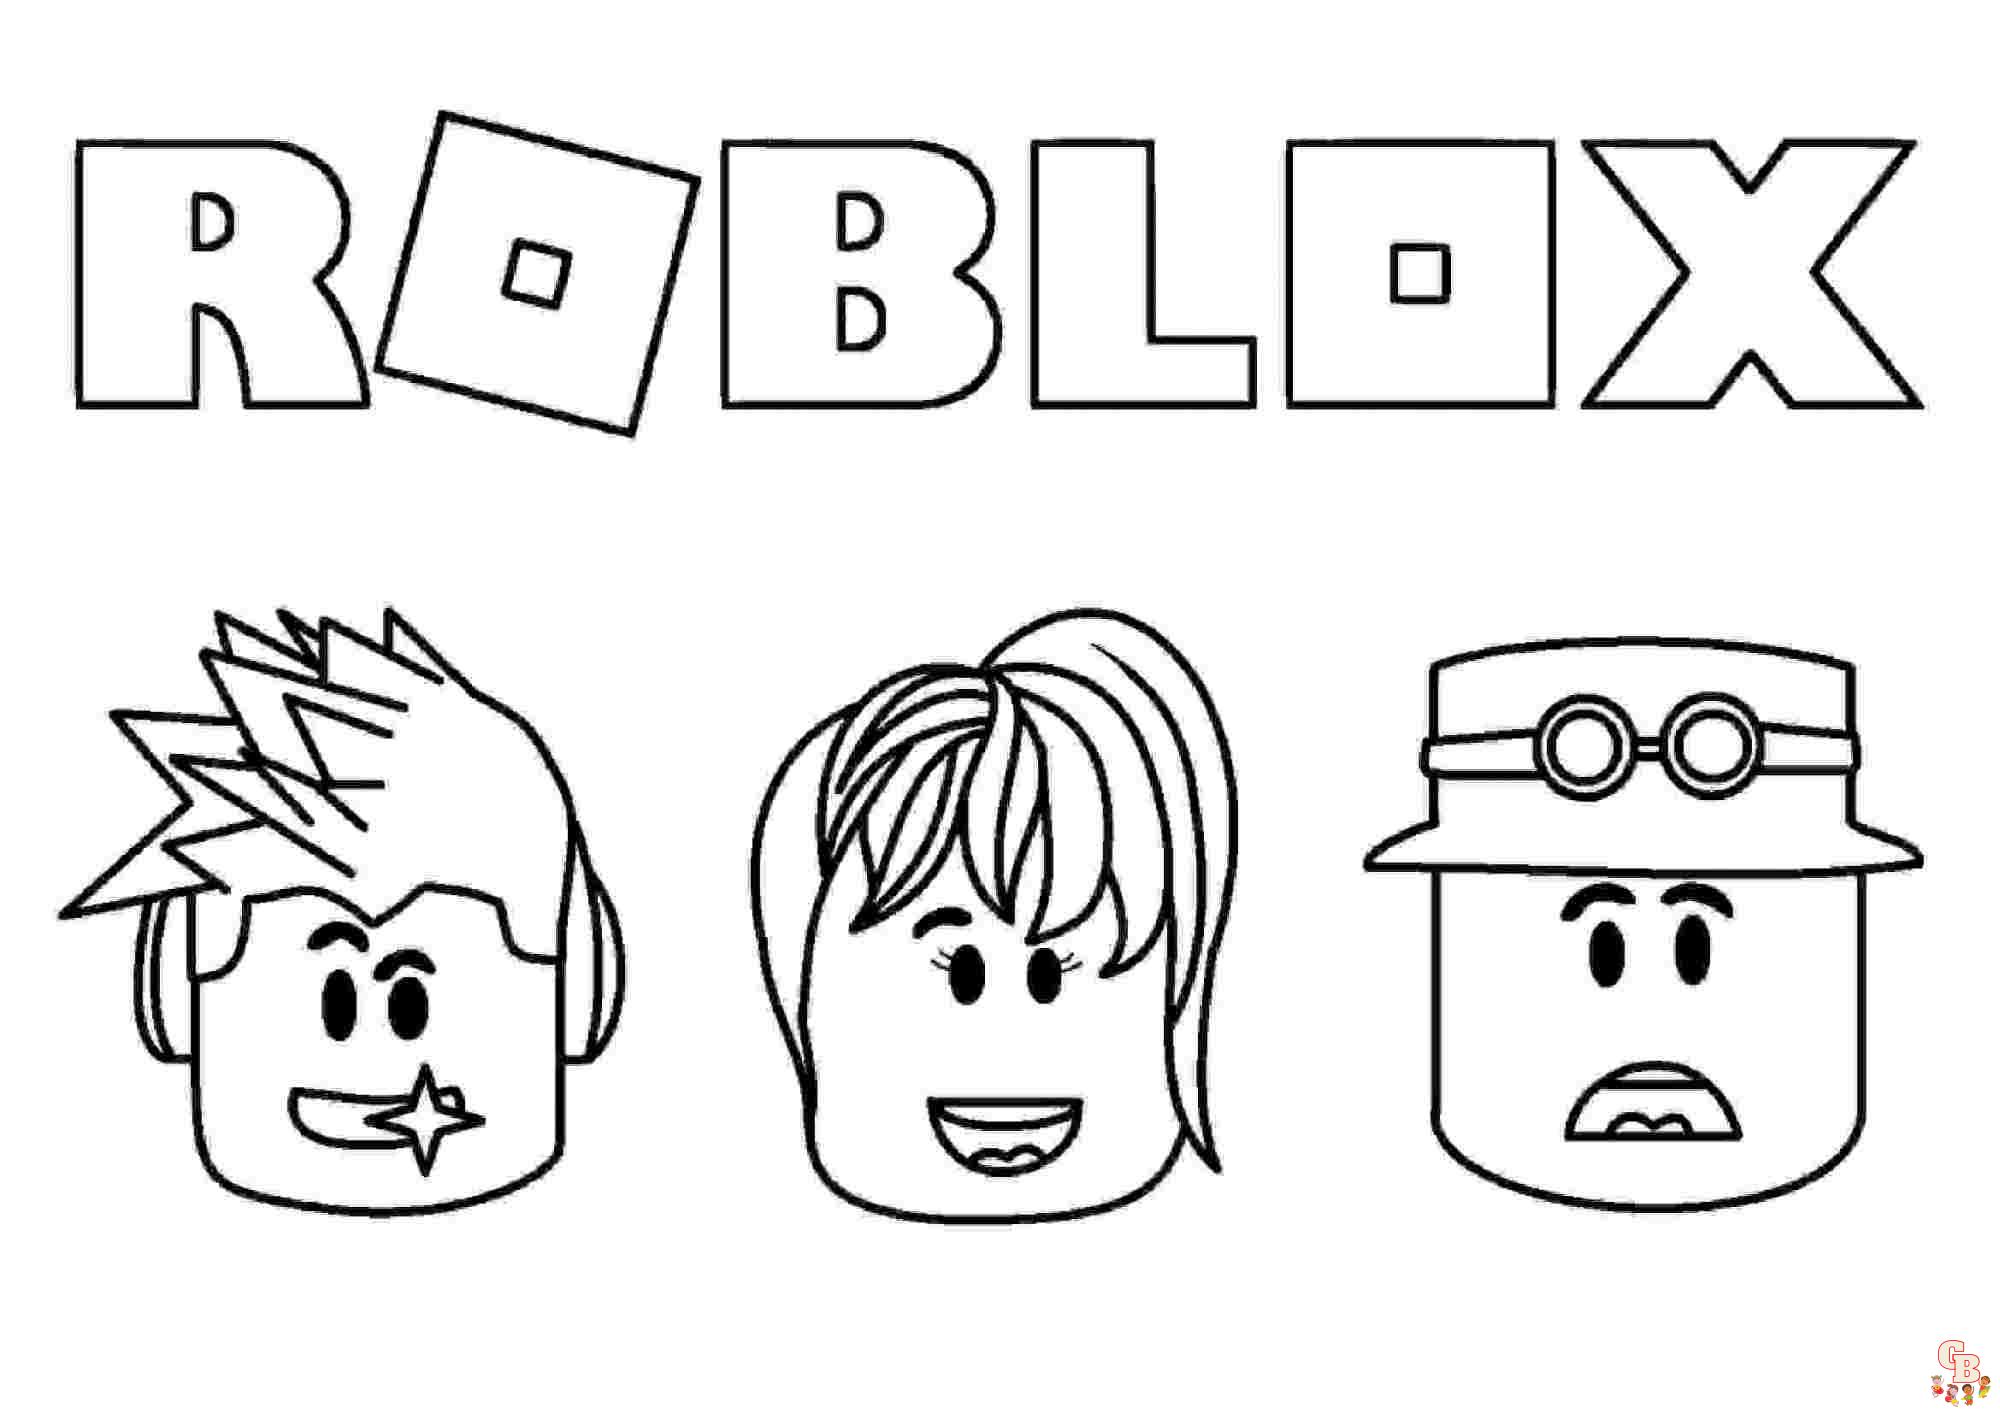 Coloriage gratuit Roblox pour les enfants - personnages, armes et équipements, logo et icône à colorier